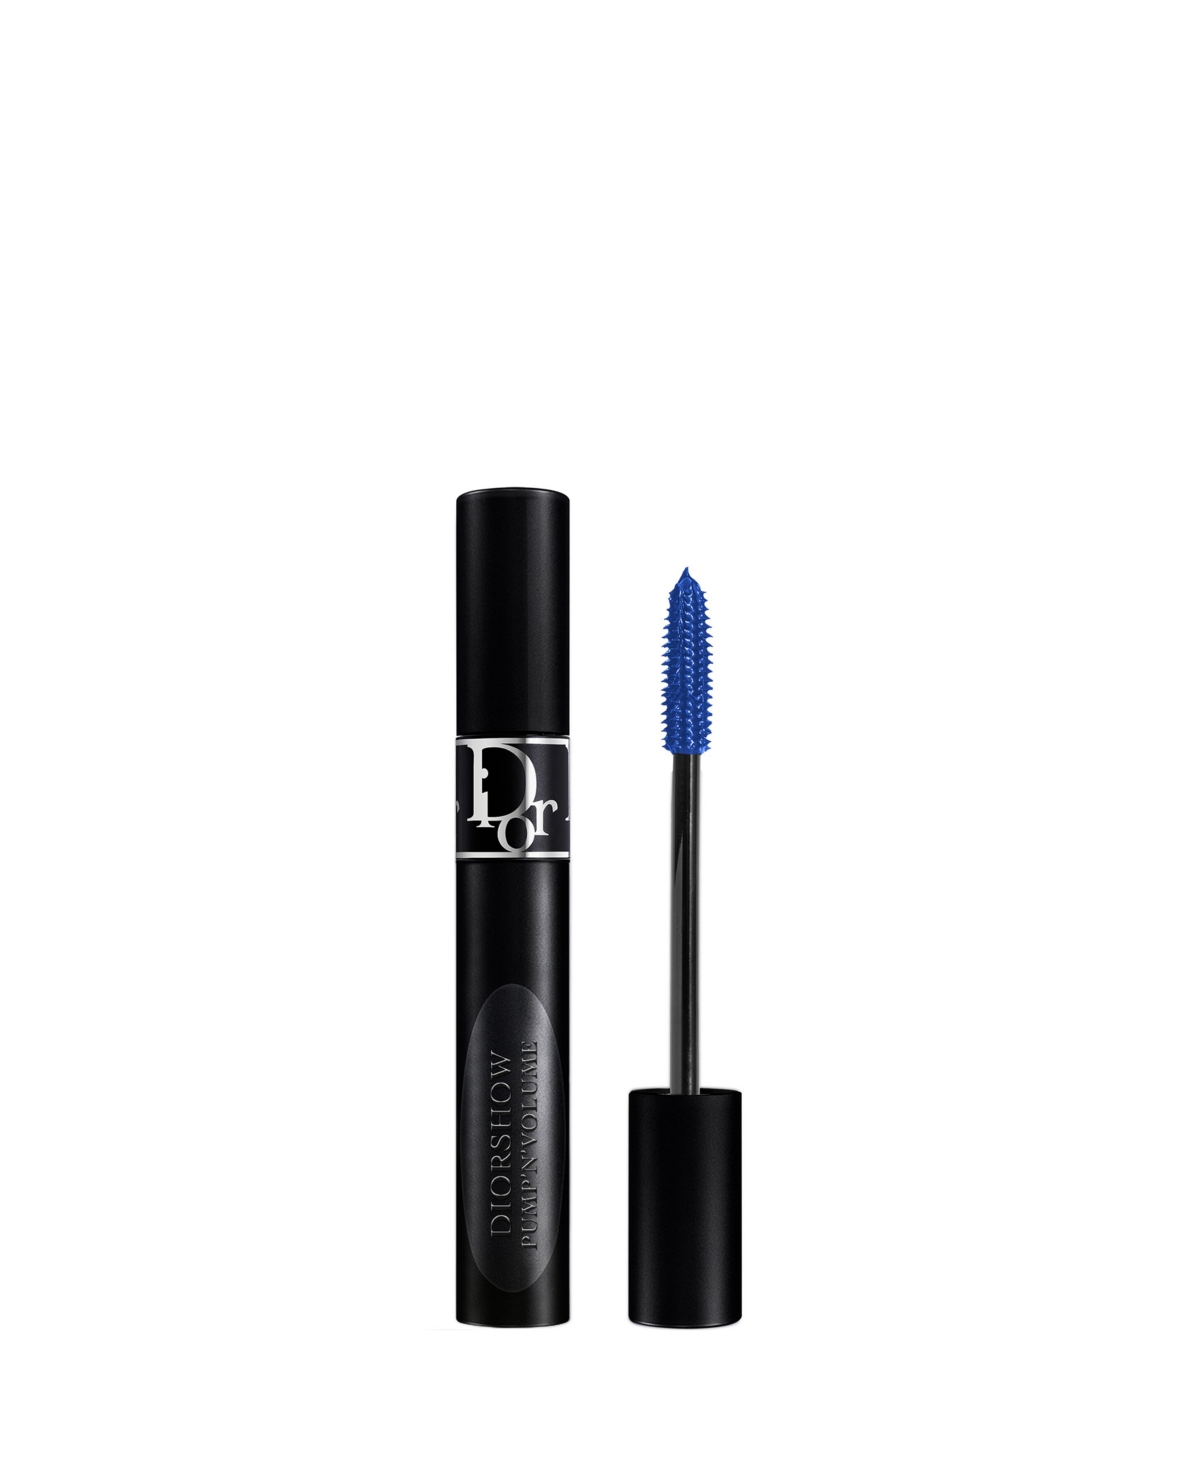 Dior Show Pump 'n' Volume Mascara In Blue (an Electric Blue)